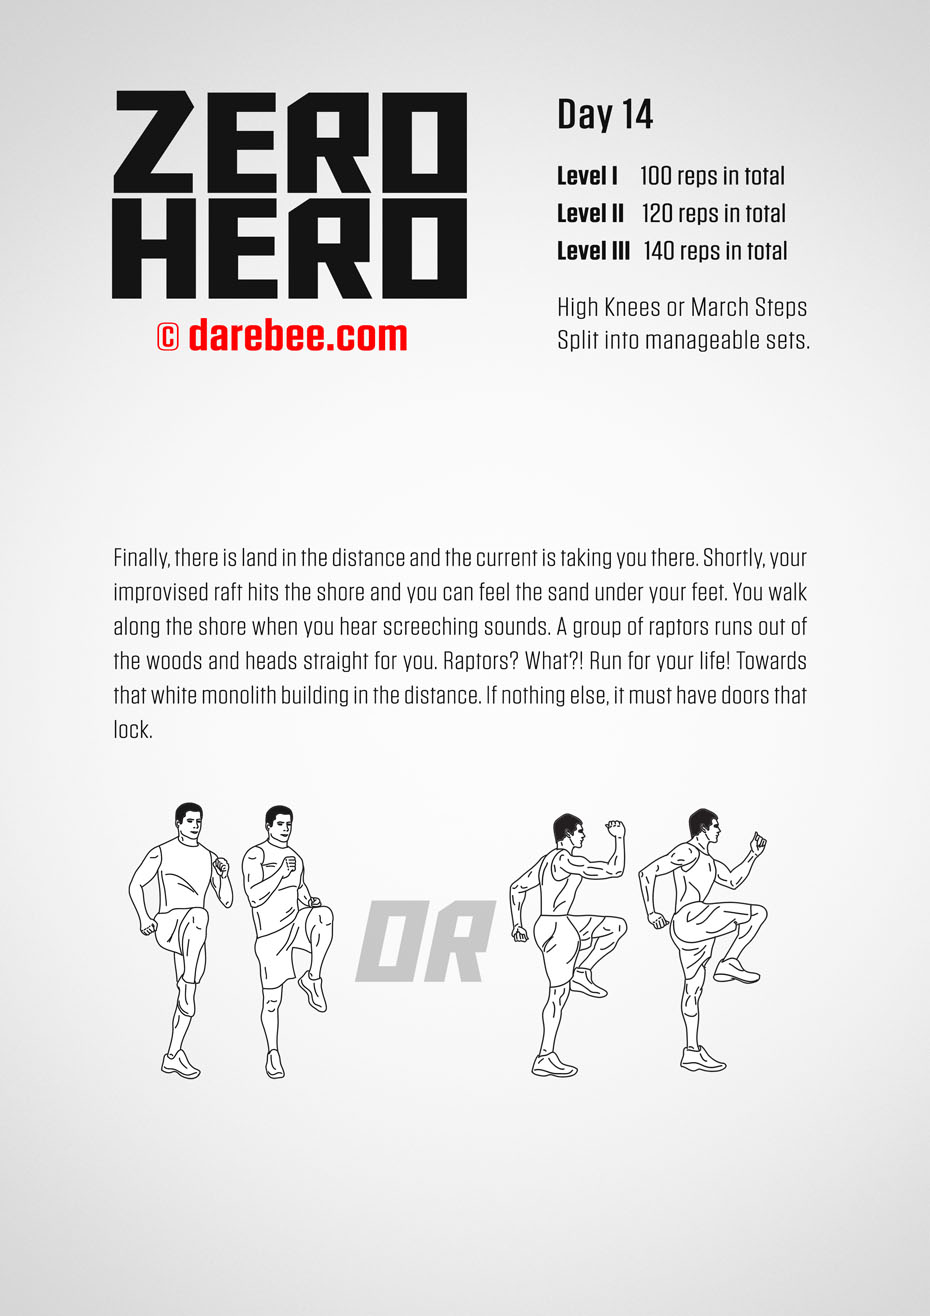 Zero Hero - 30 Day Low Impact Bodyweight Program